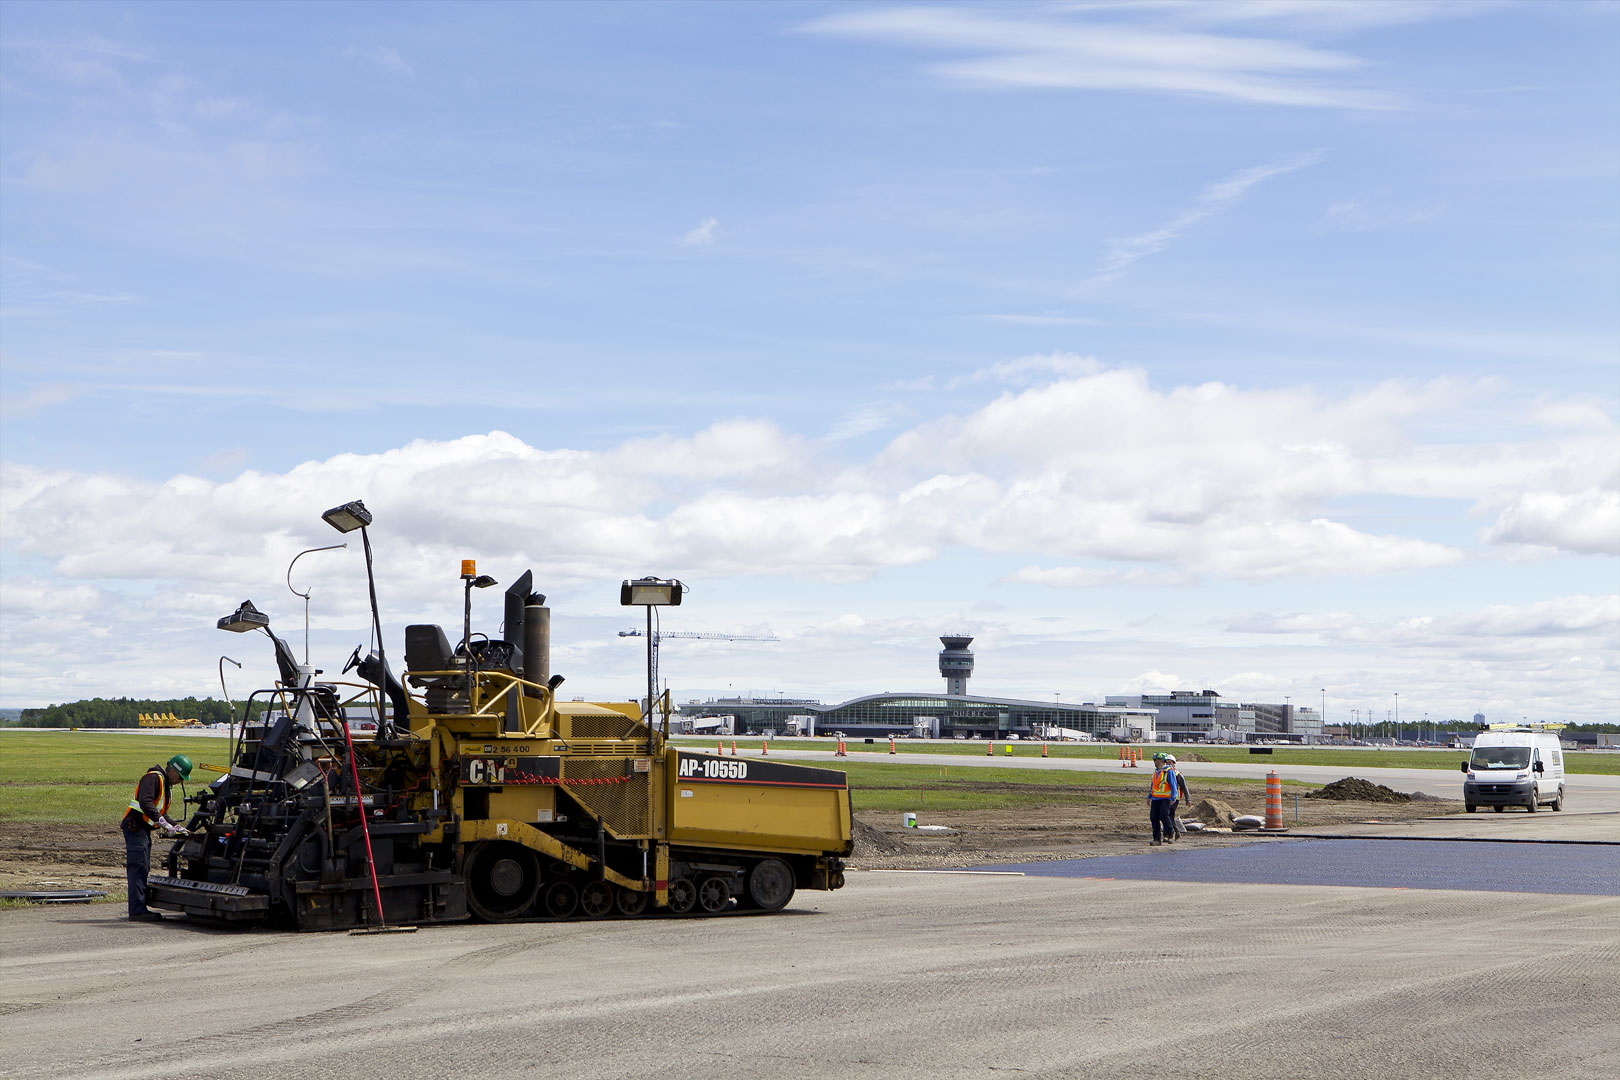 Machinerie pour des travaux de pavage sur le terrain d'aviation de l'Aéroport international Jean-Lesage de Québec (YQB)